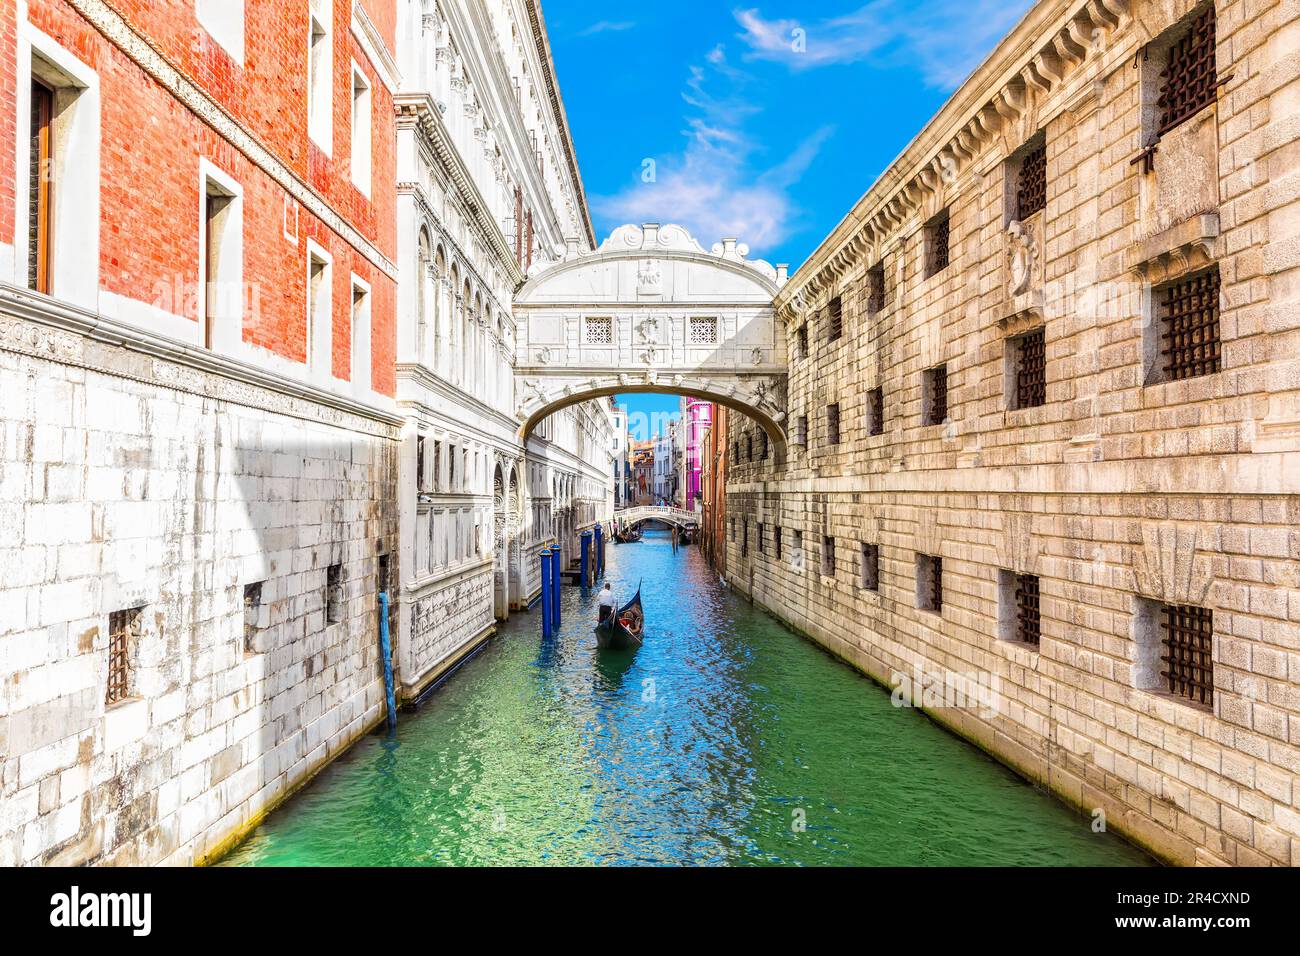 Seufzerbrücke, die beliebteste Sehenswürdigkeit in Venedig, Italien. Stockfoto